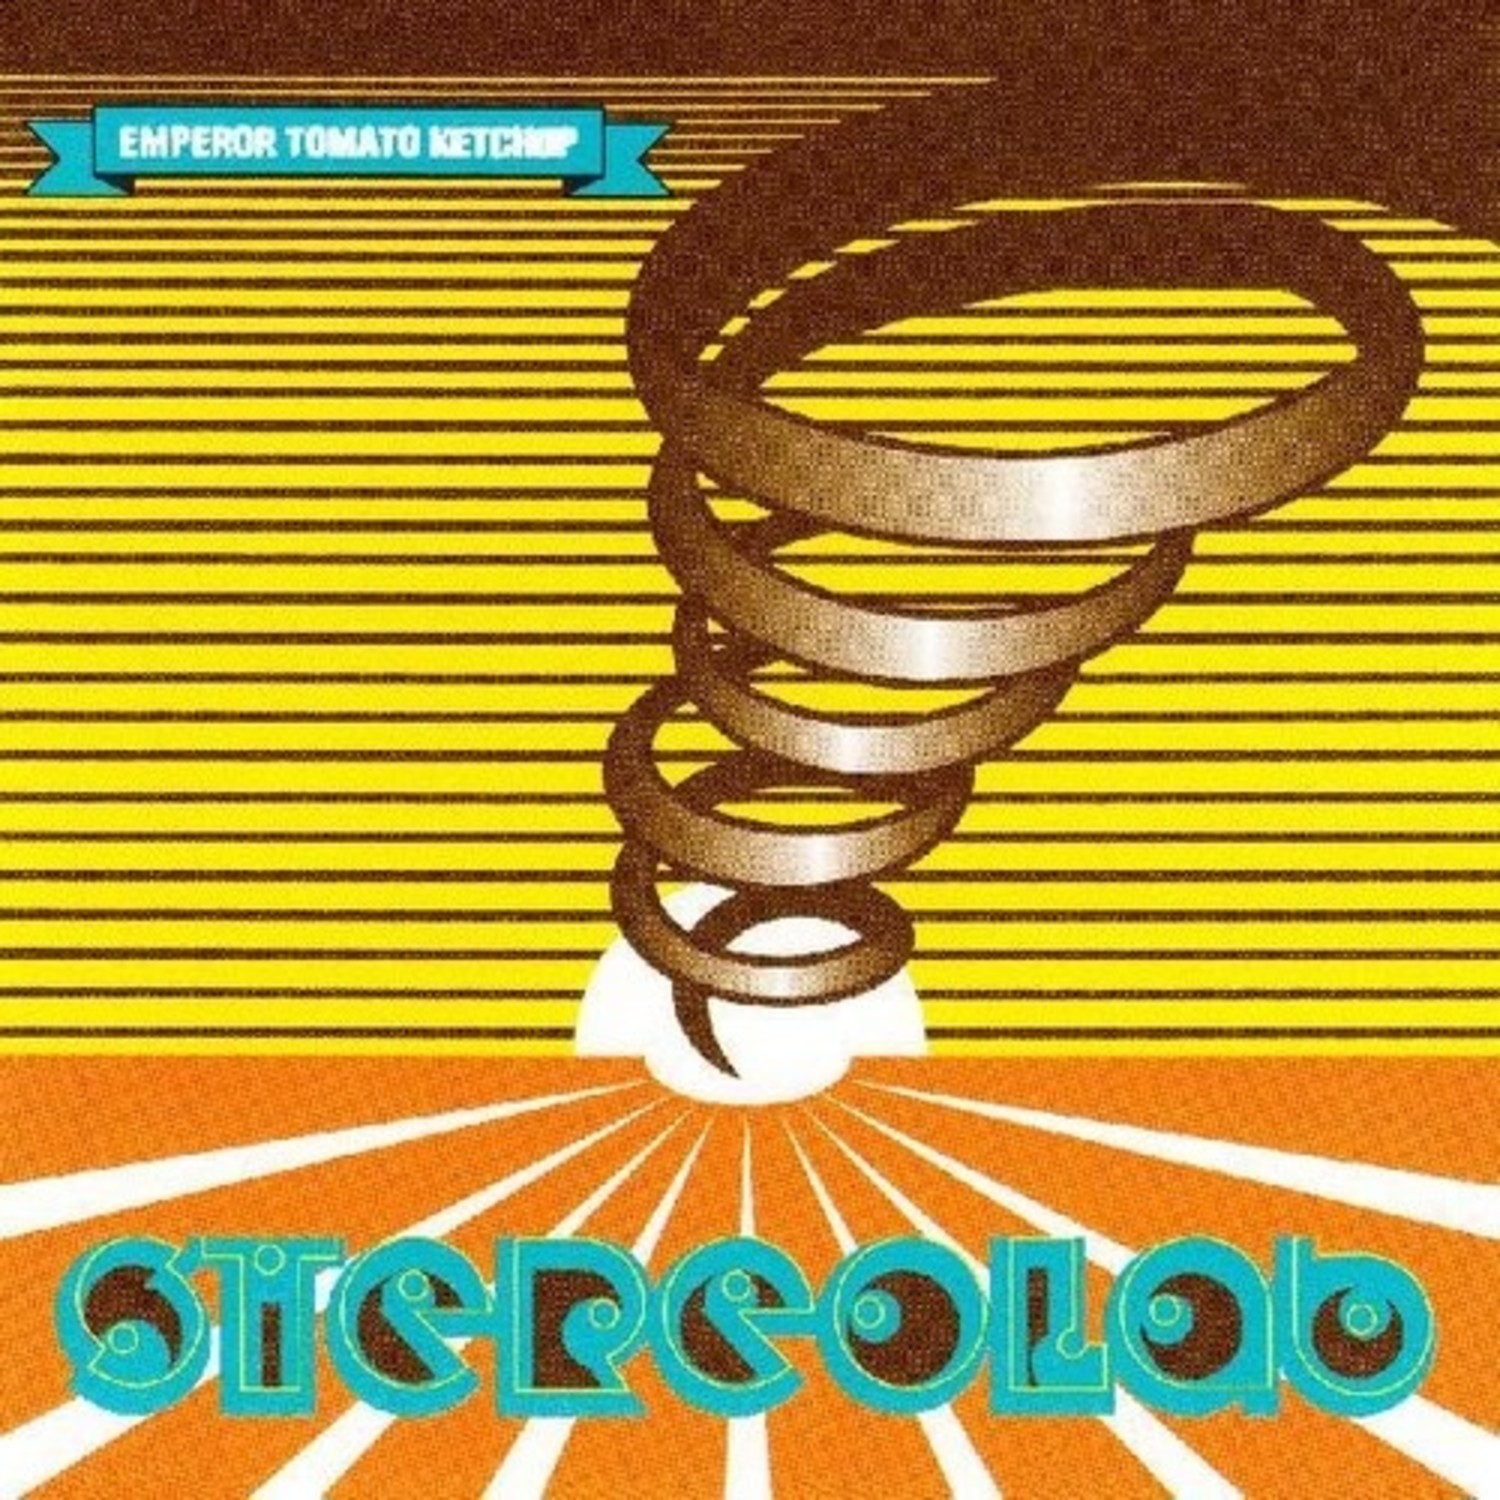 Stereolab レコード-